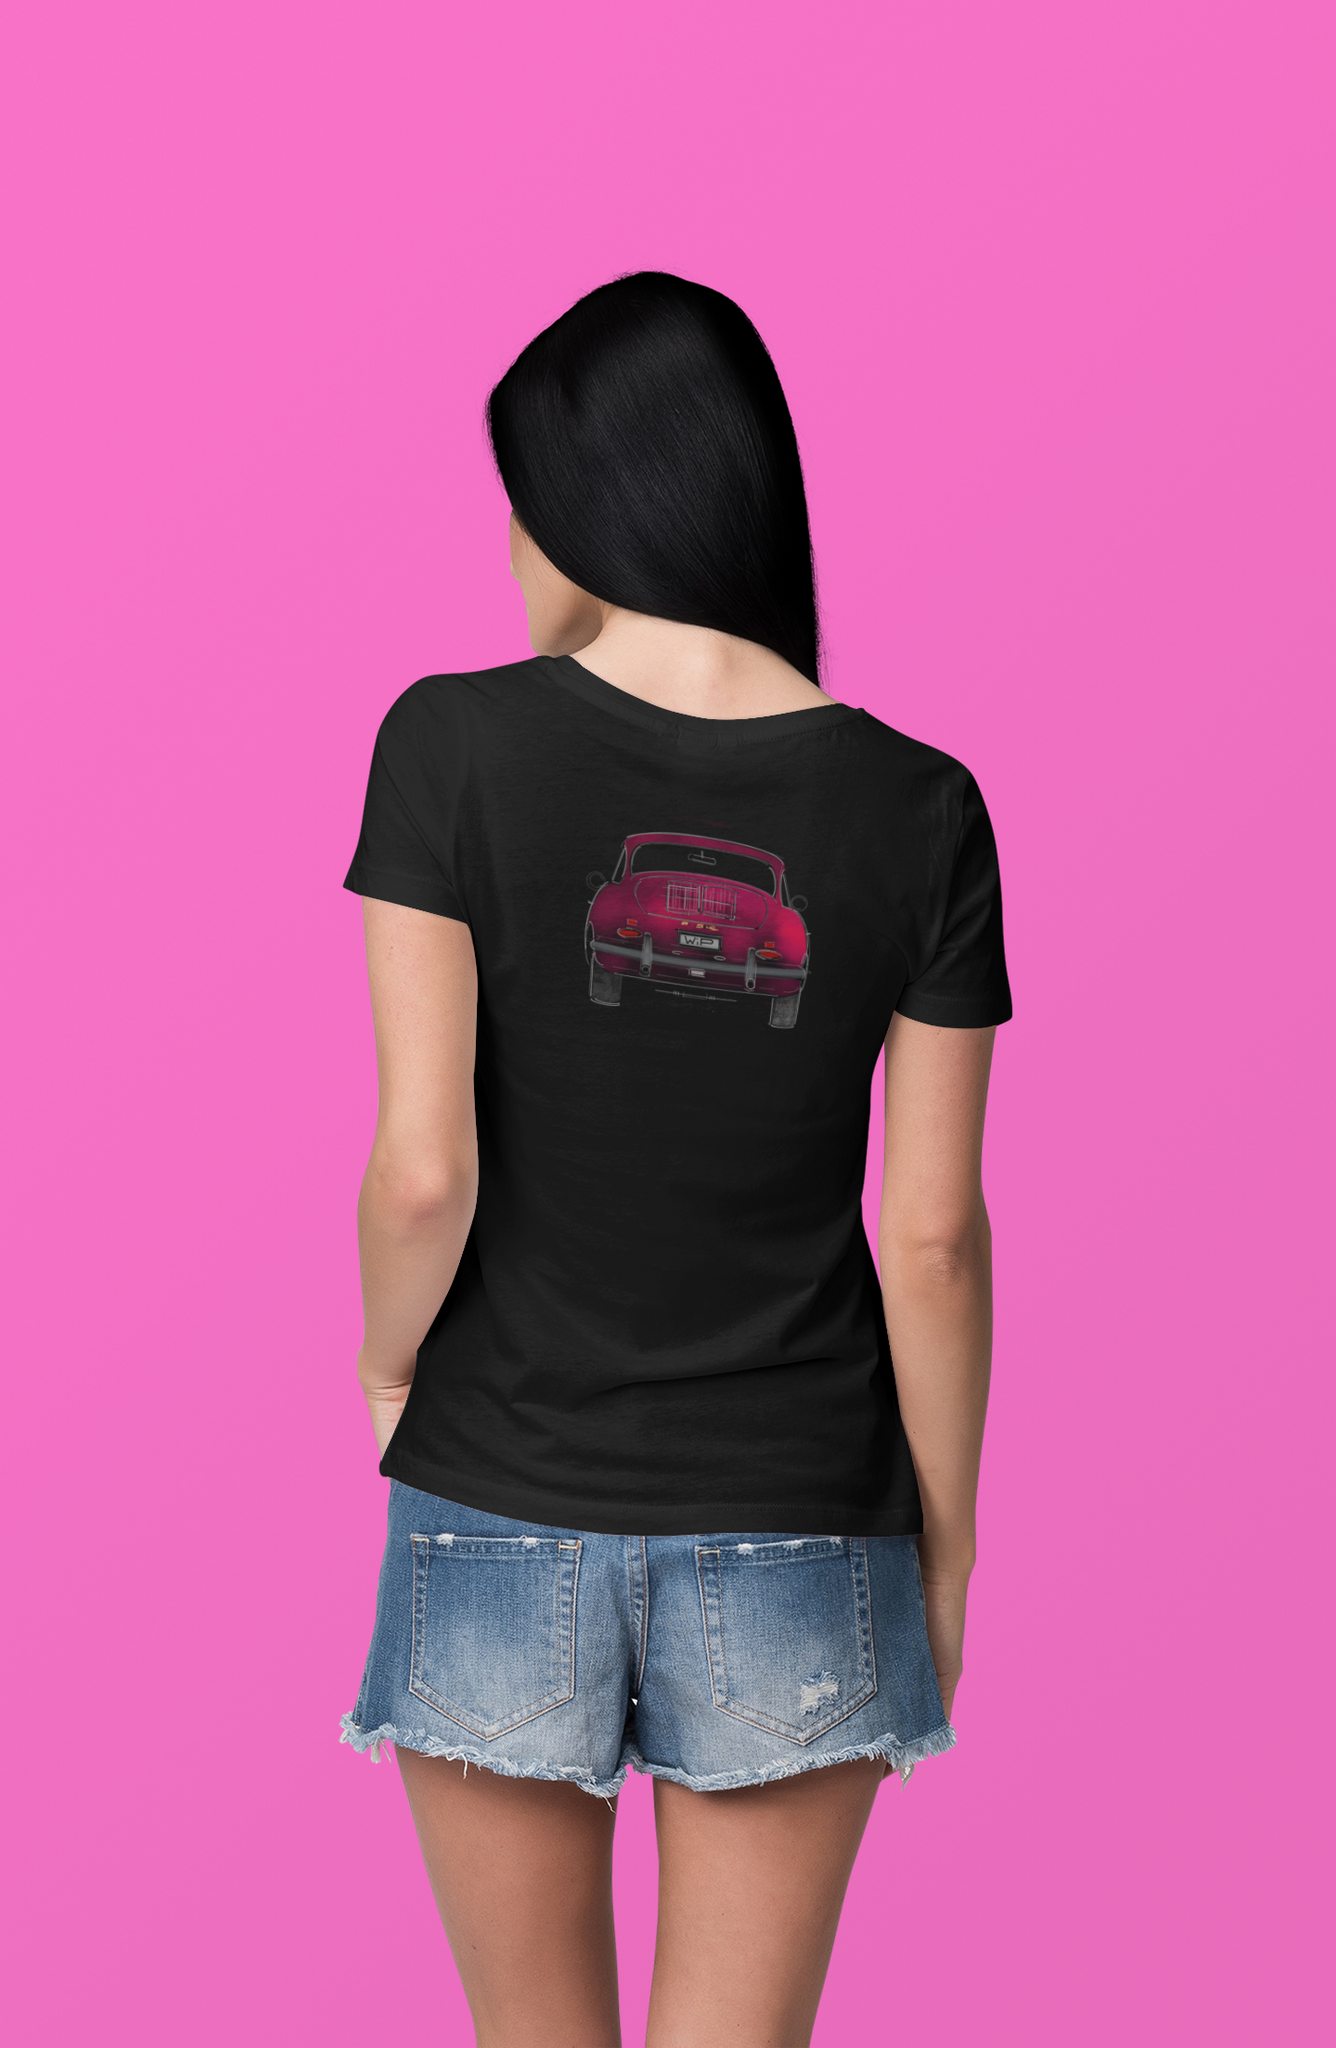 Porsche 356 | T-shirt (Women's V-Neck)